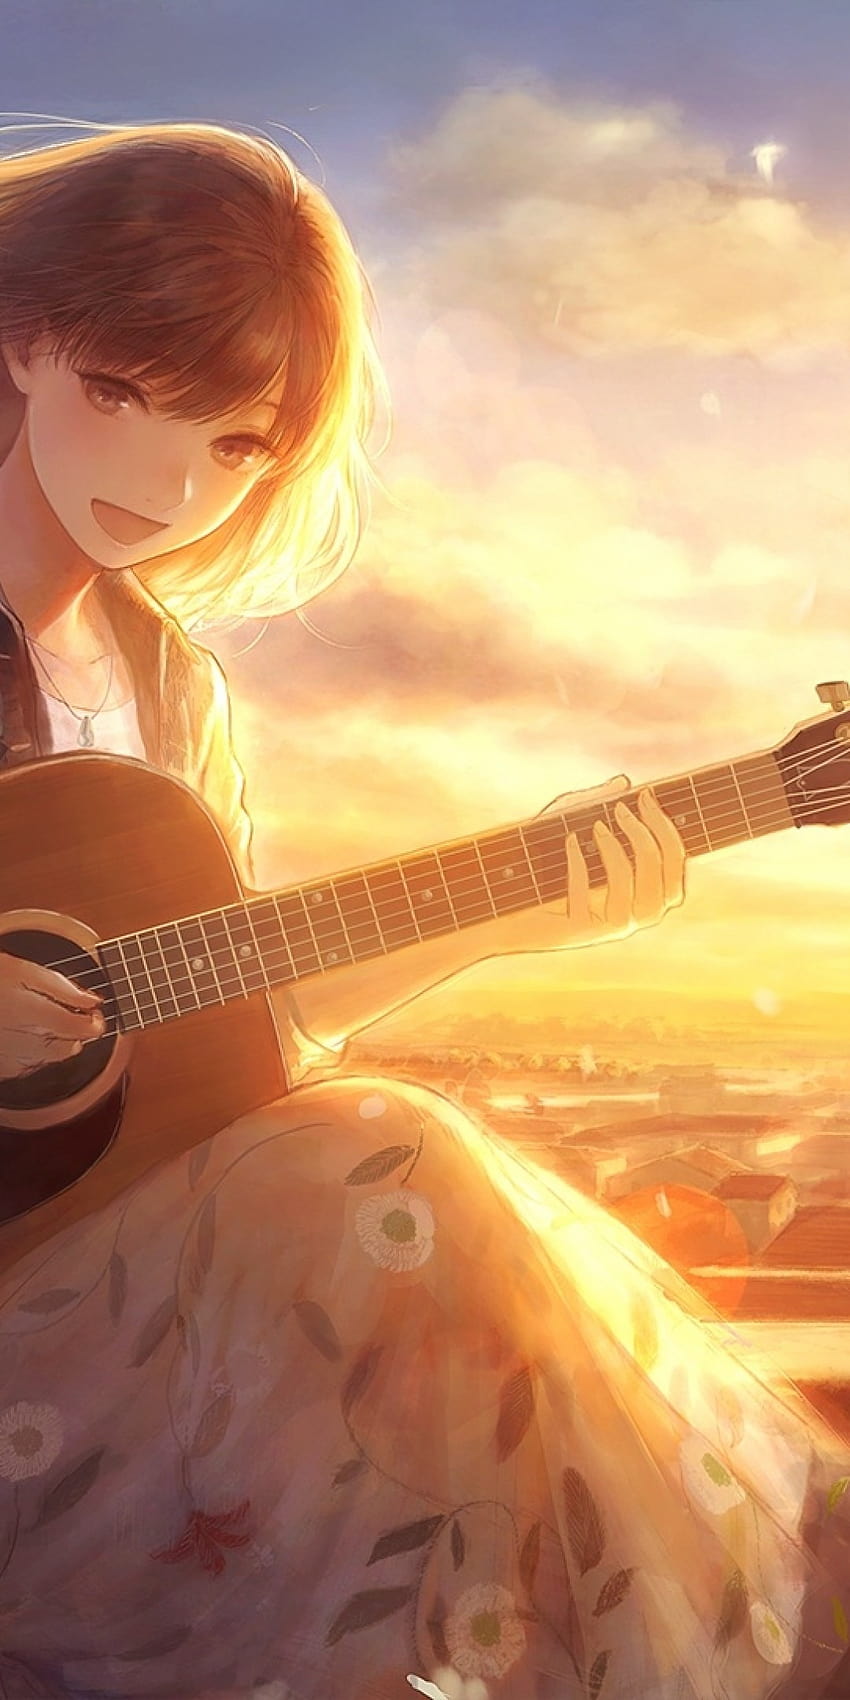 1080x2160 Anime Kız, Şarkı Söylemek, Güneş Işığı, Gitar, Enstrüman, Çiçekler, Rüzgar, Yapraklar, Kedi, Huawei Mate 10 için Manzara, anime şarkı HD telefon duvar kağıdı